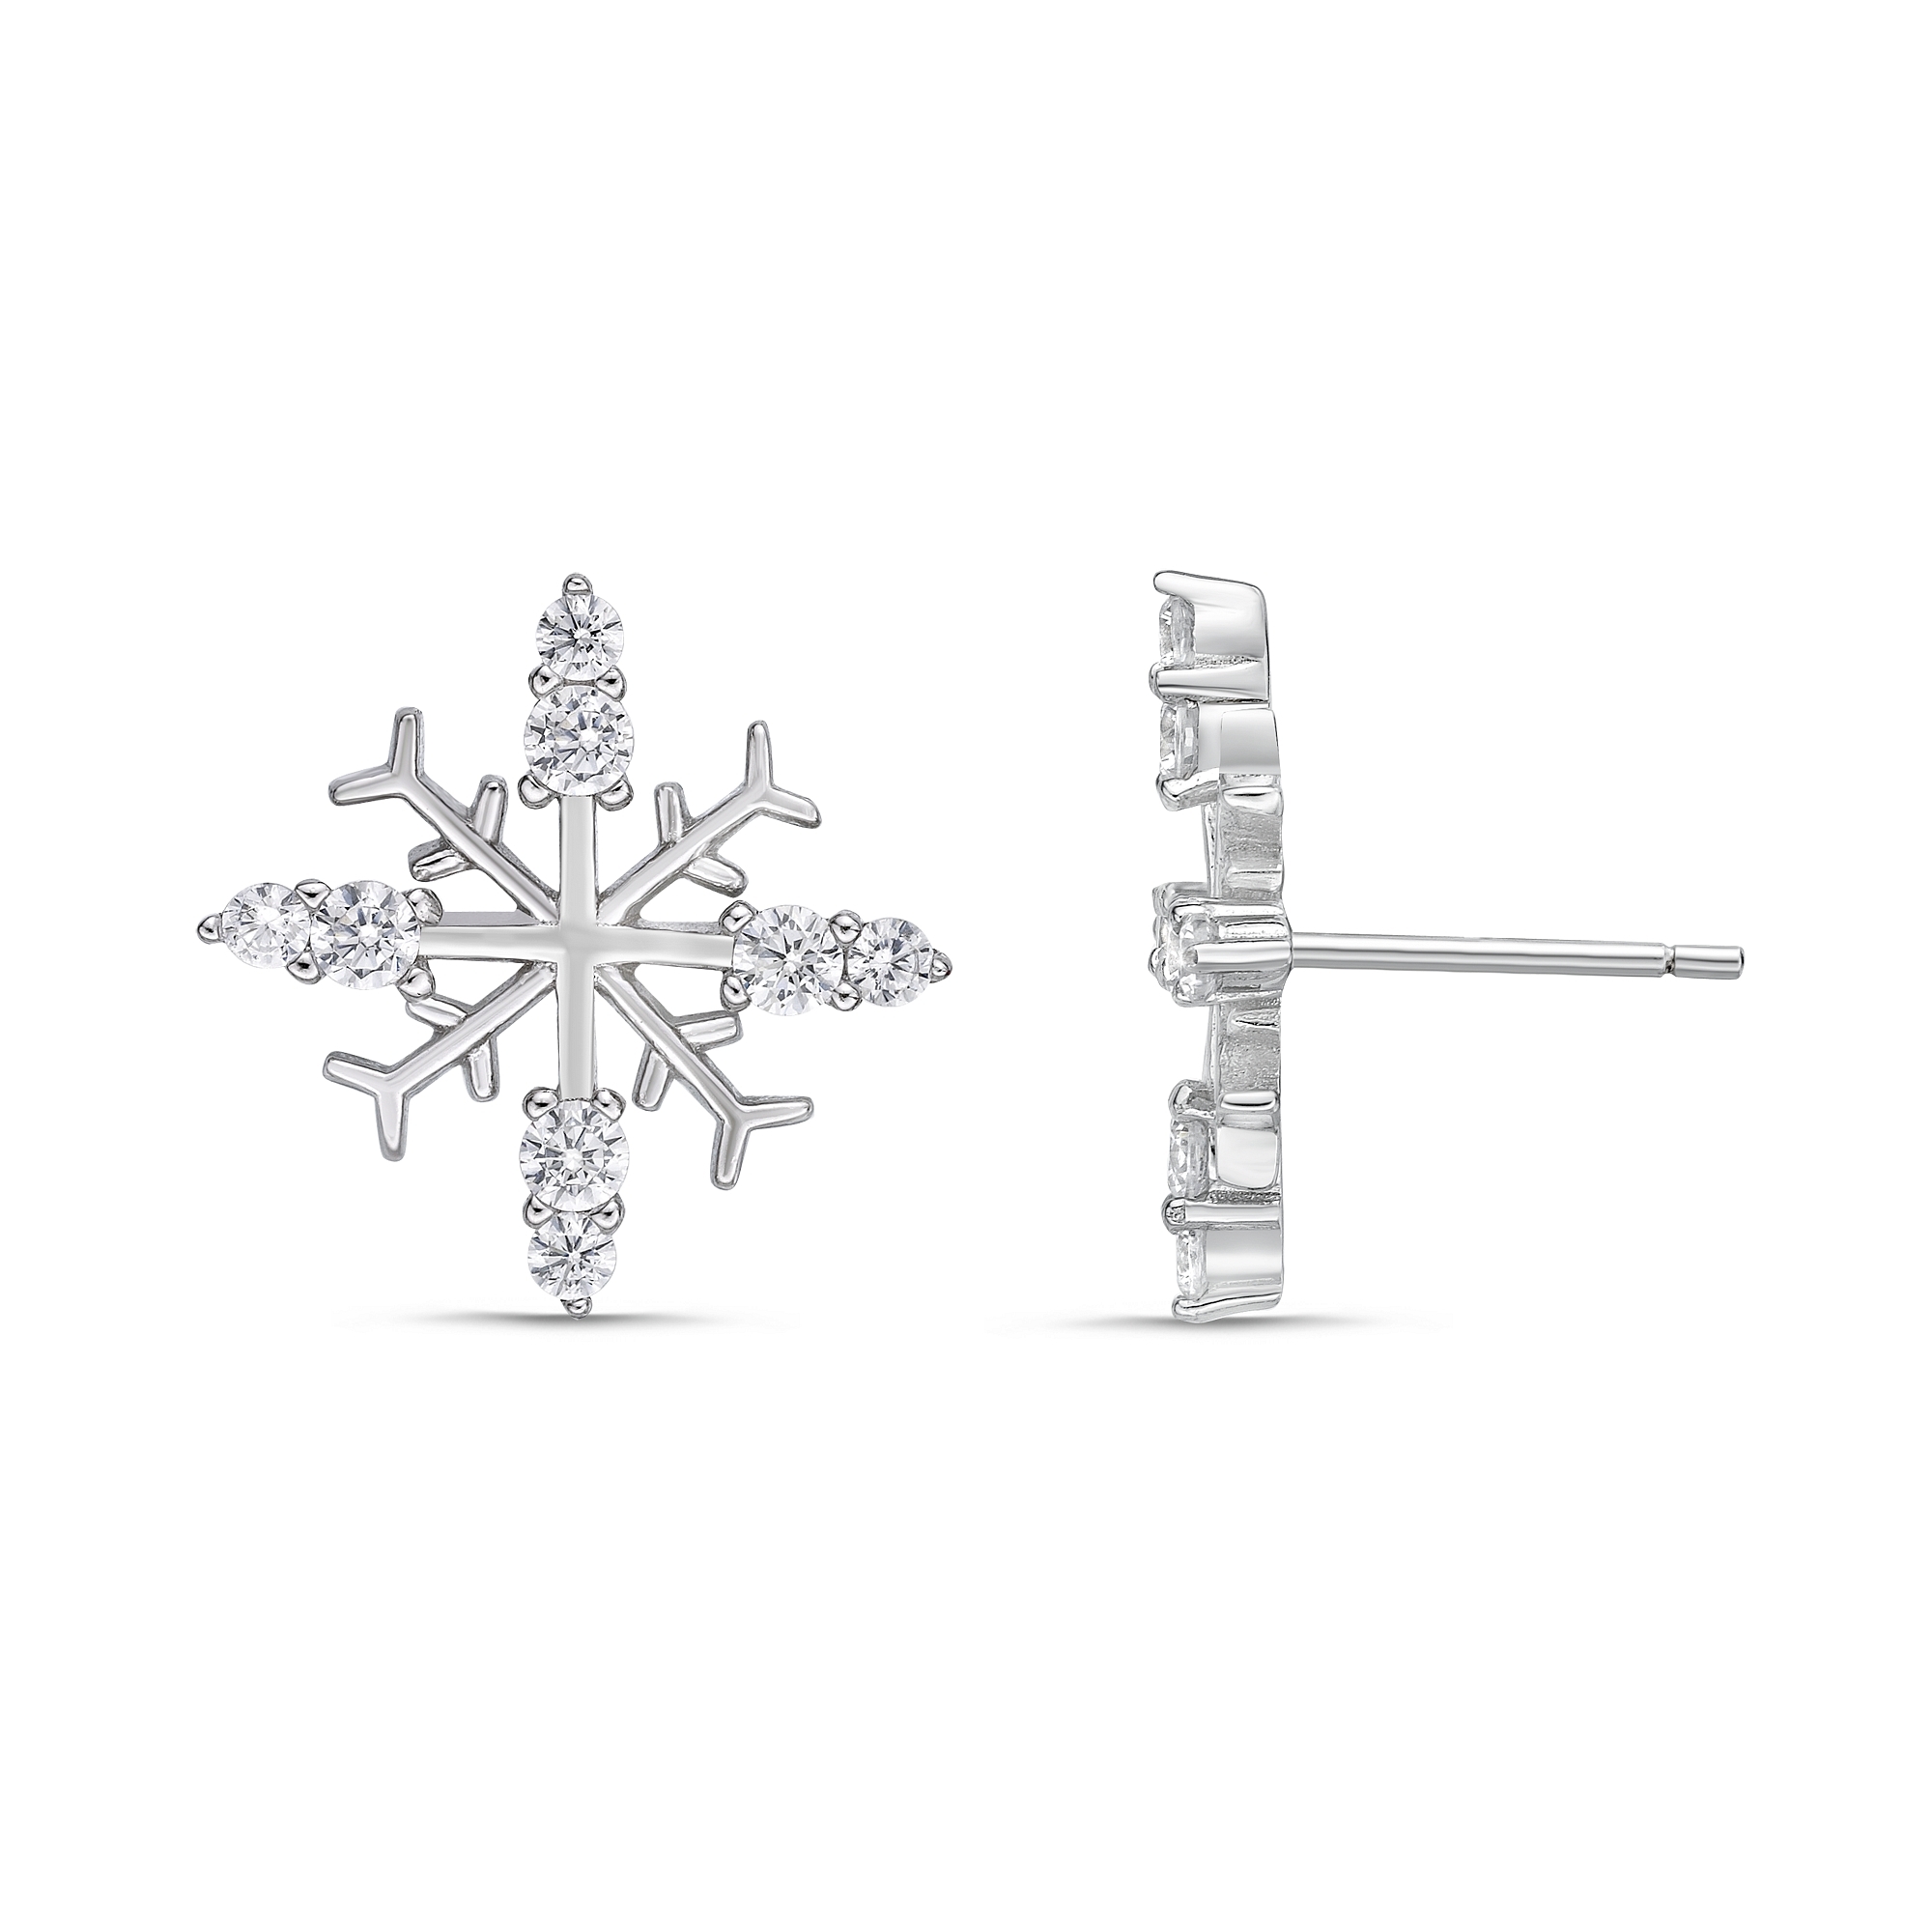 49171-earrings-fashion-jewelry-sterling-silver-.jpg